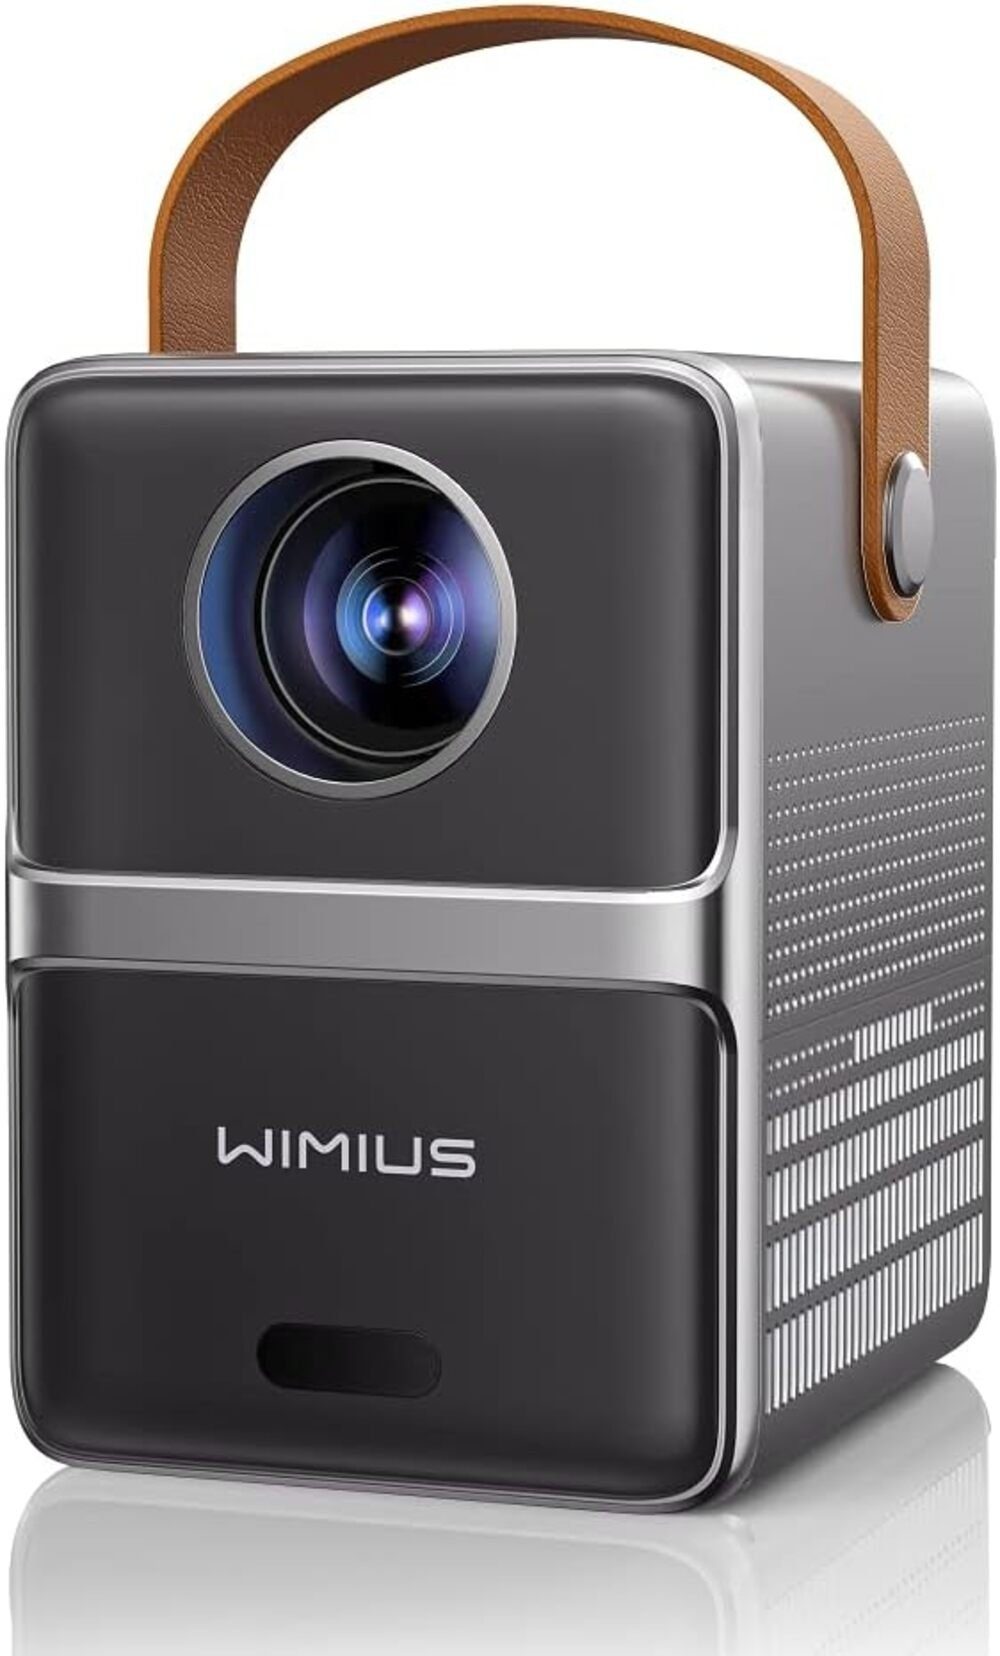 WiMiUS Portabler Projektor (1920x1080 px, Elektrischer fokus lumen tragbar wimius kleiner videoprojektor für)